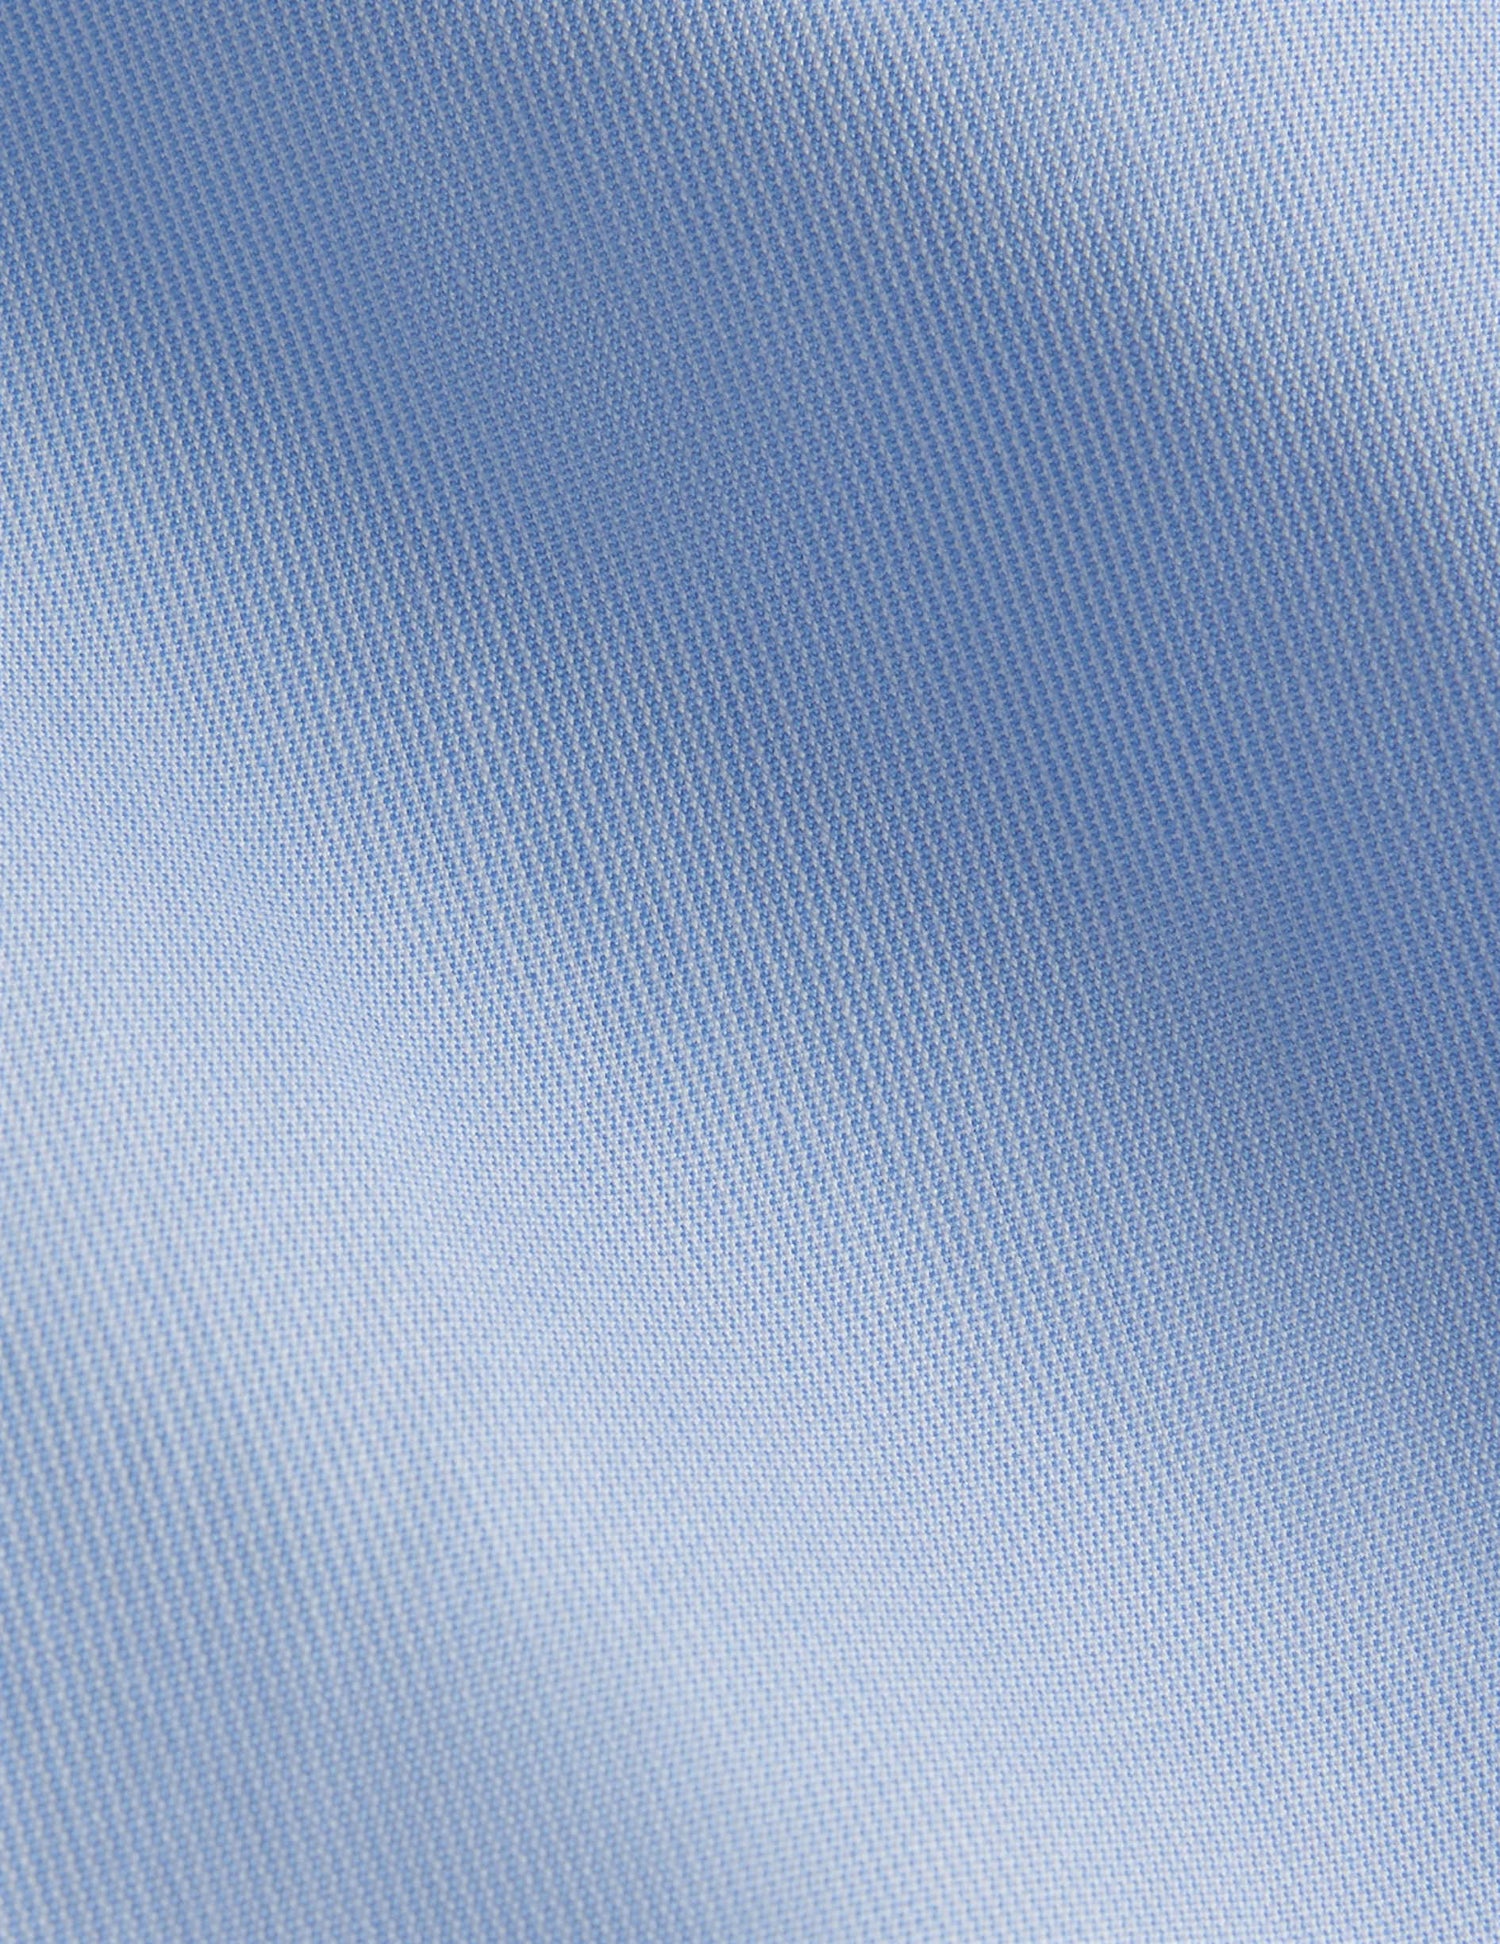 Semi-fitted blue striped shirt - Poplin - Italian Collar#2